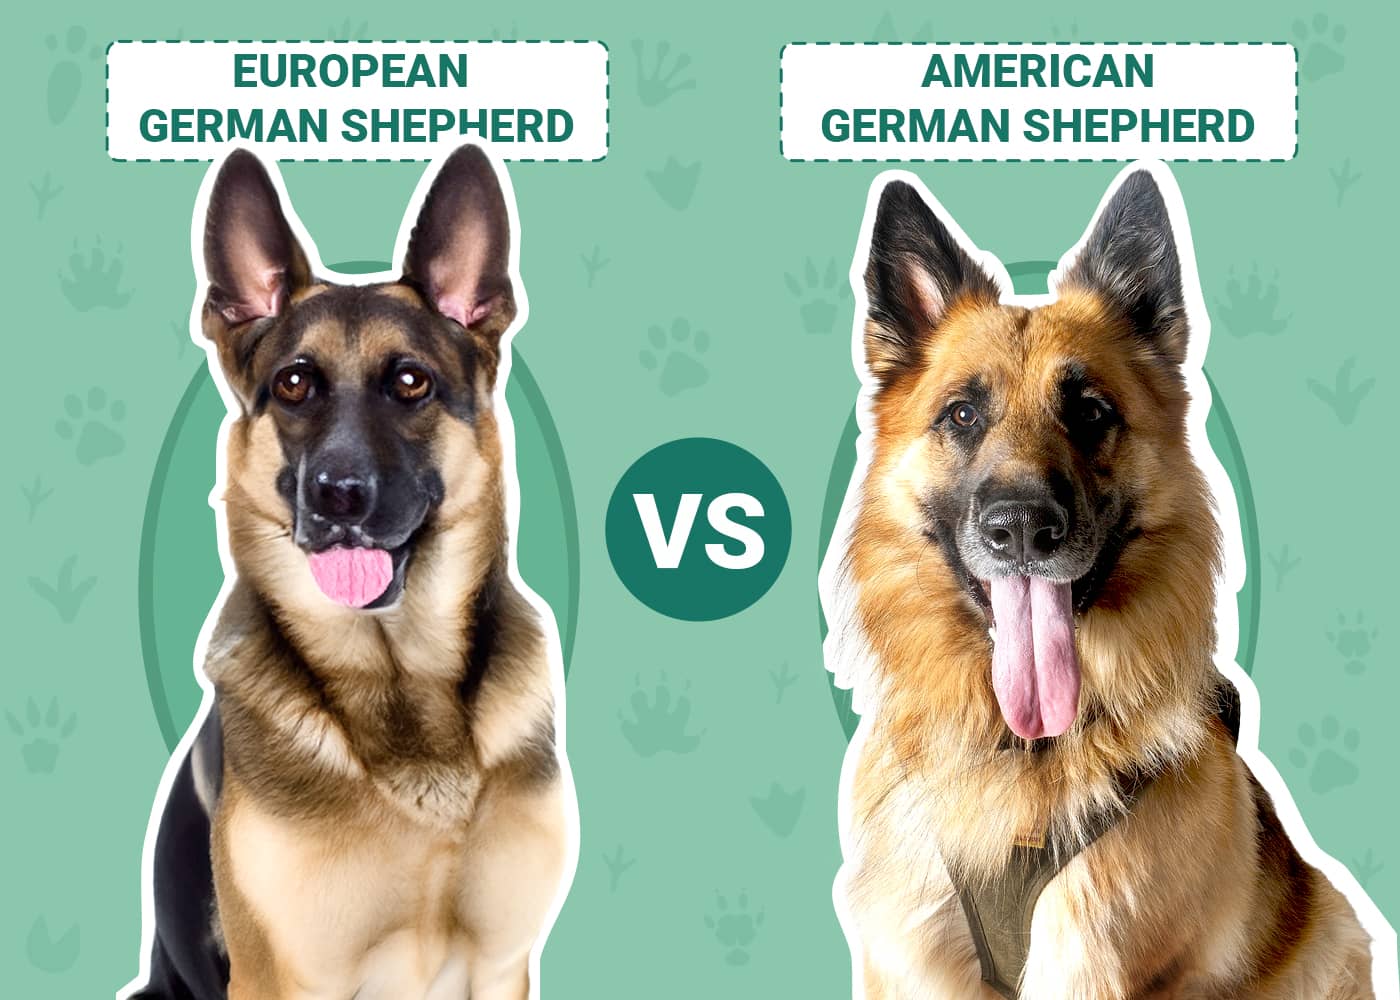 European vs American German Shepherd